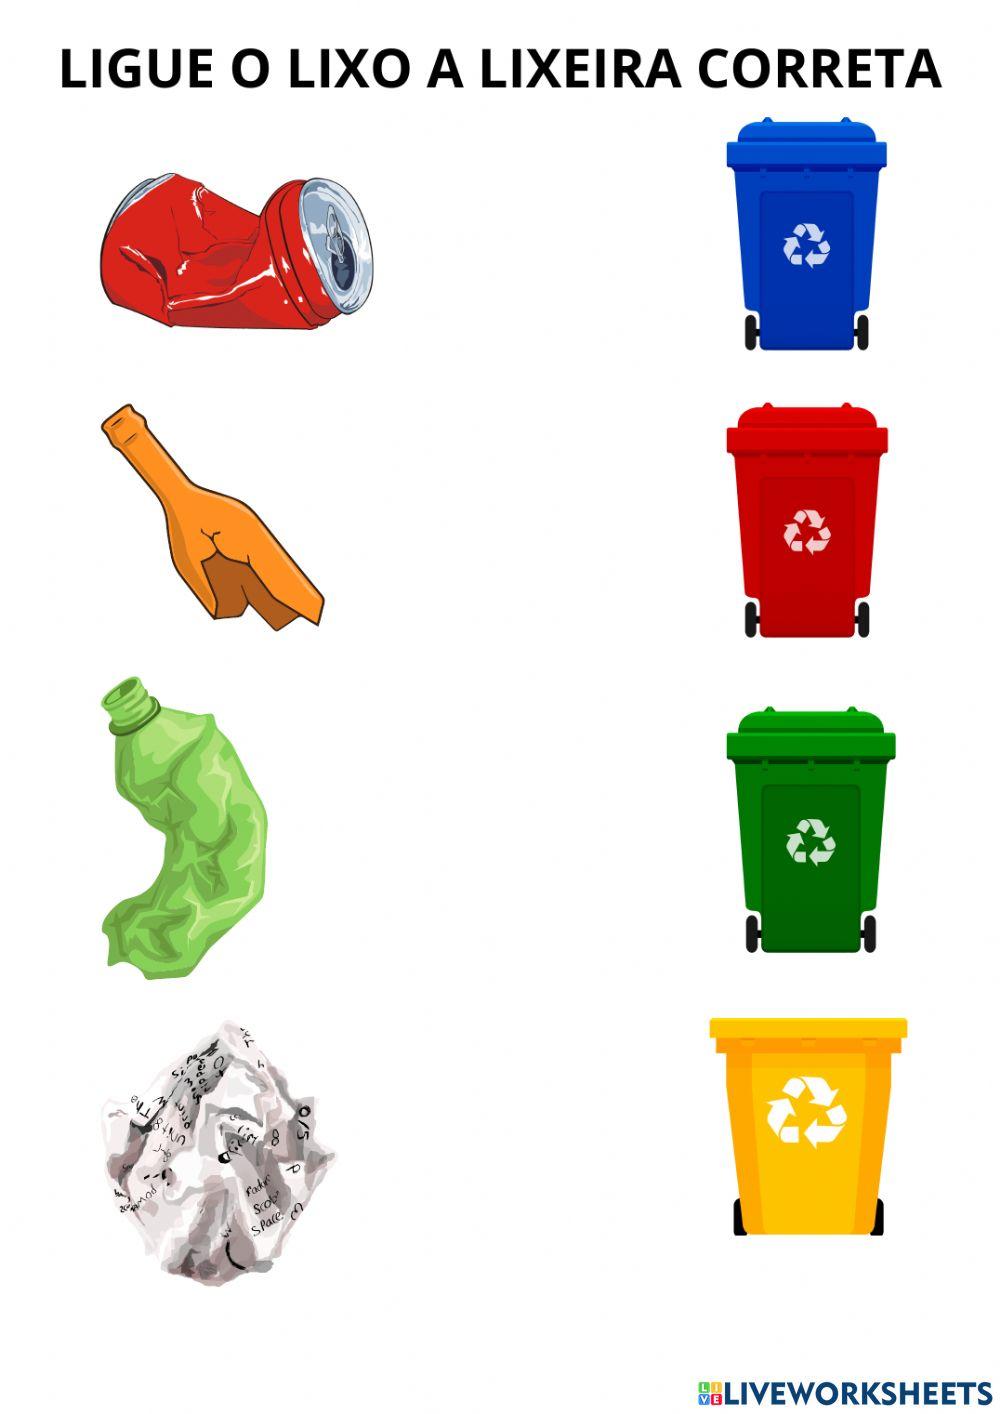 Jogo on-line ensina como fazer reciclagem correta - Agência